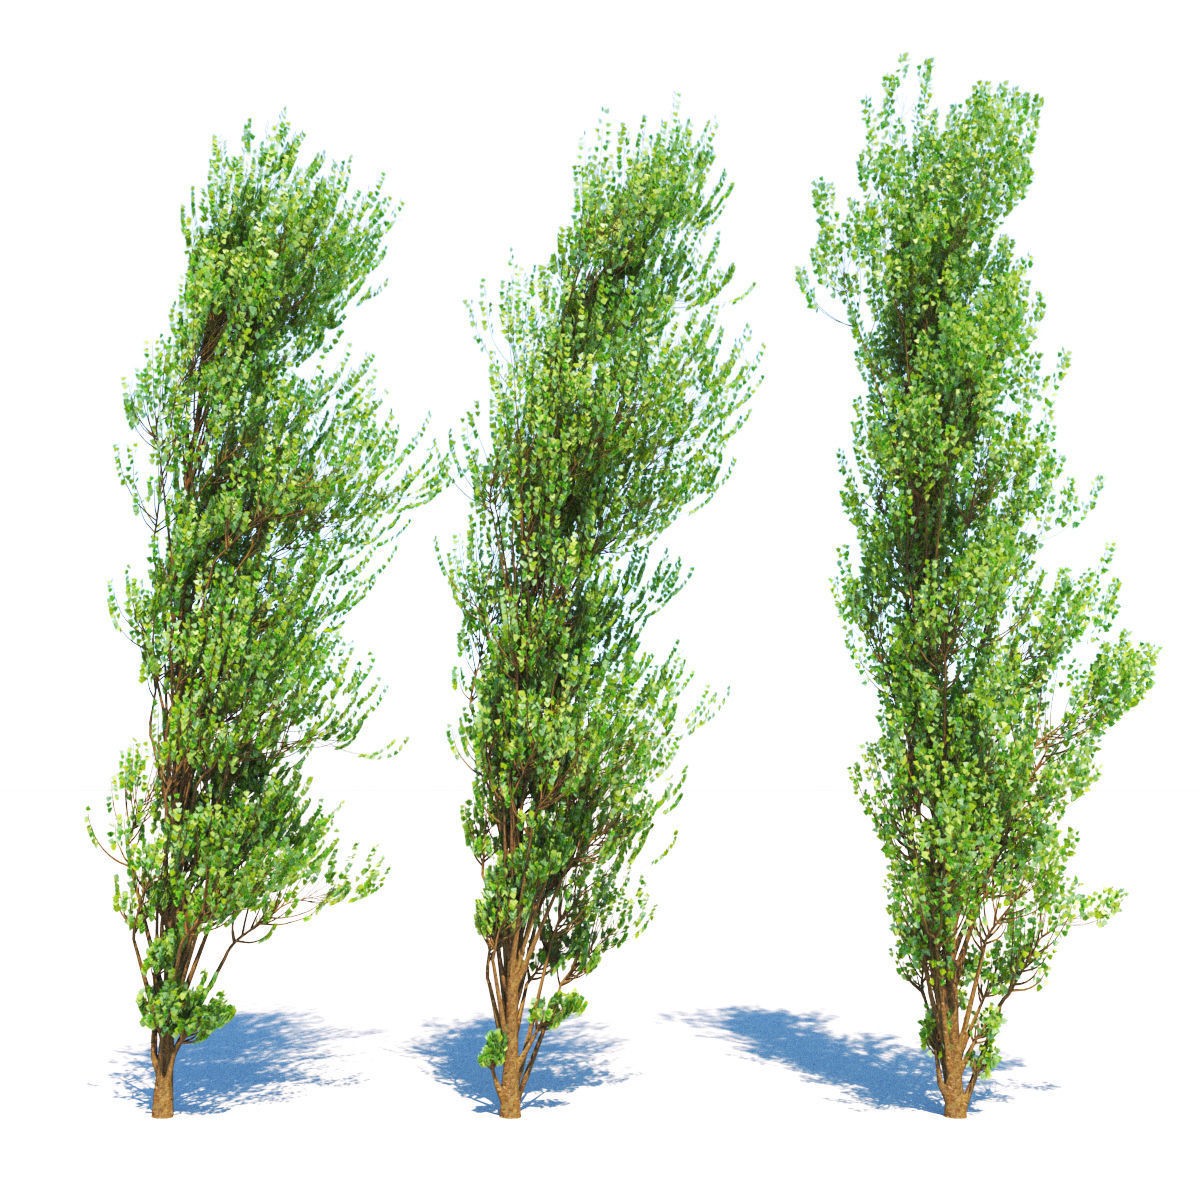 3d model of poplar trees